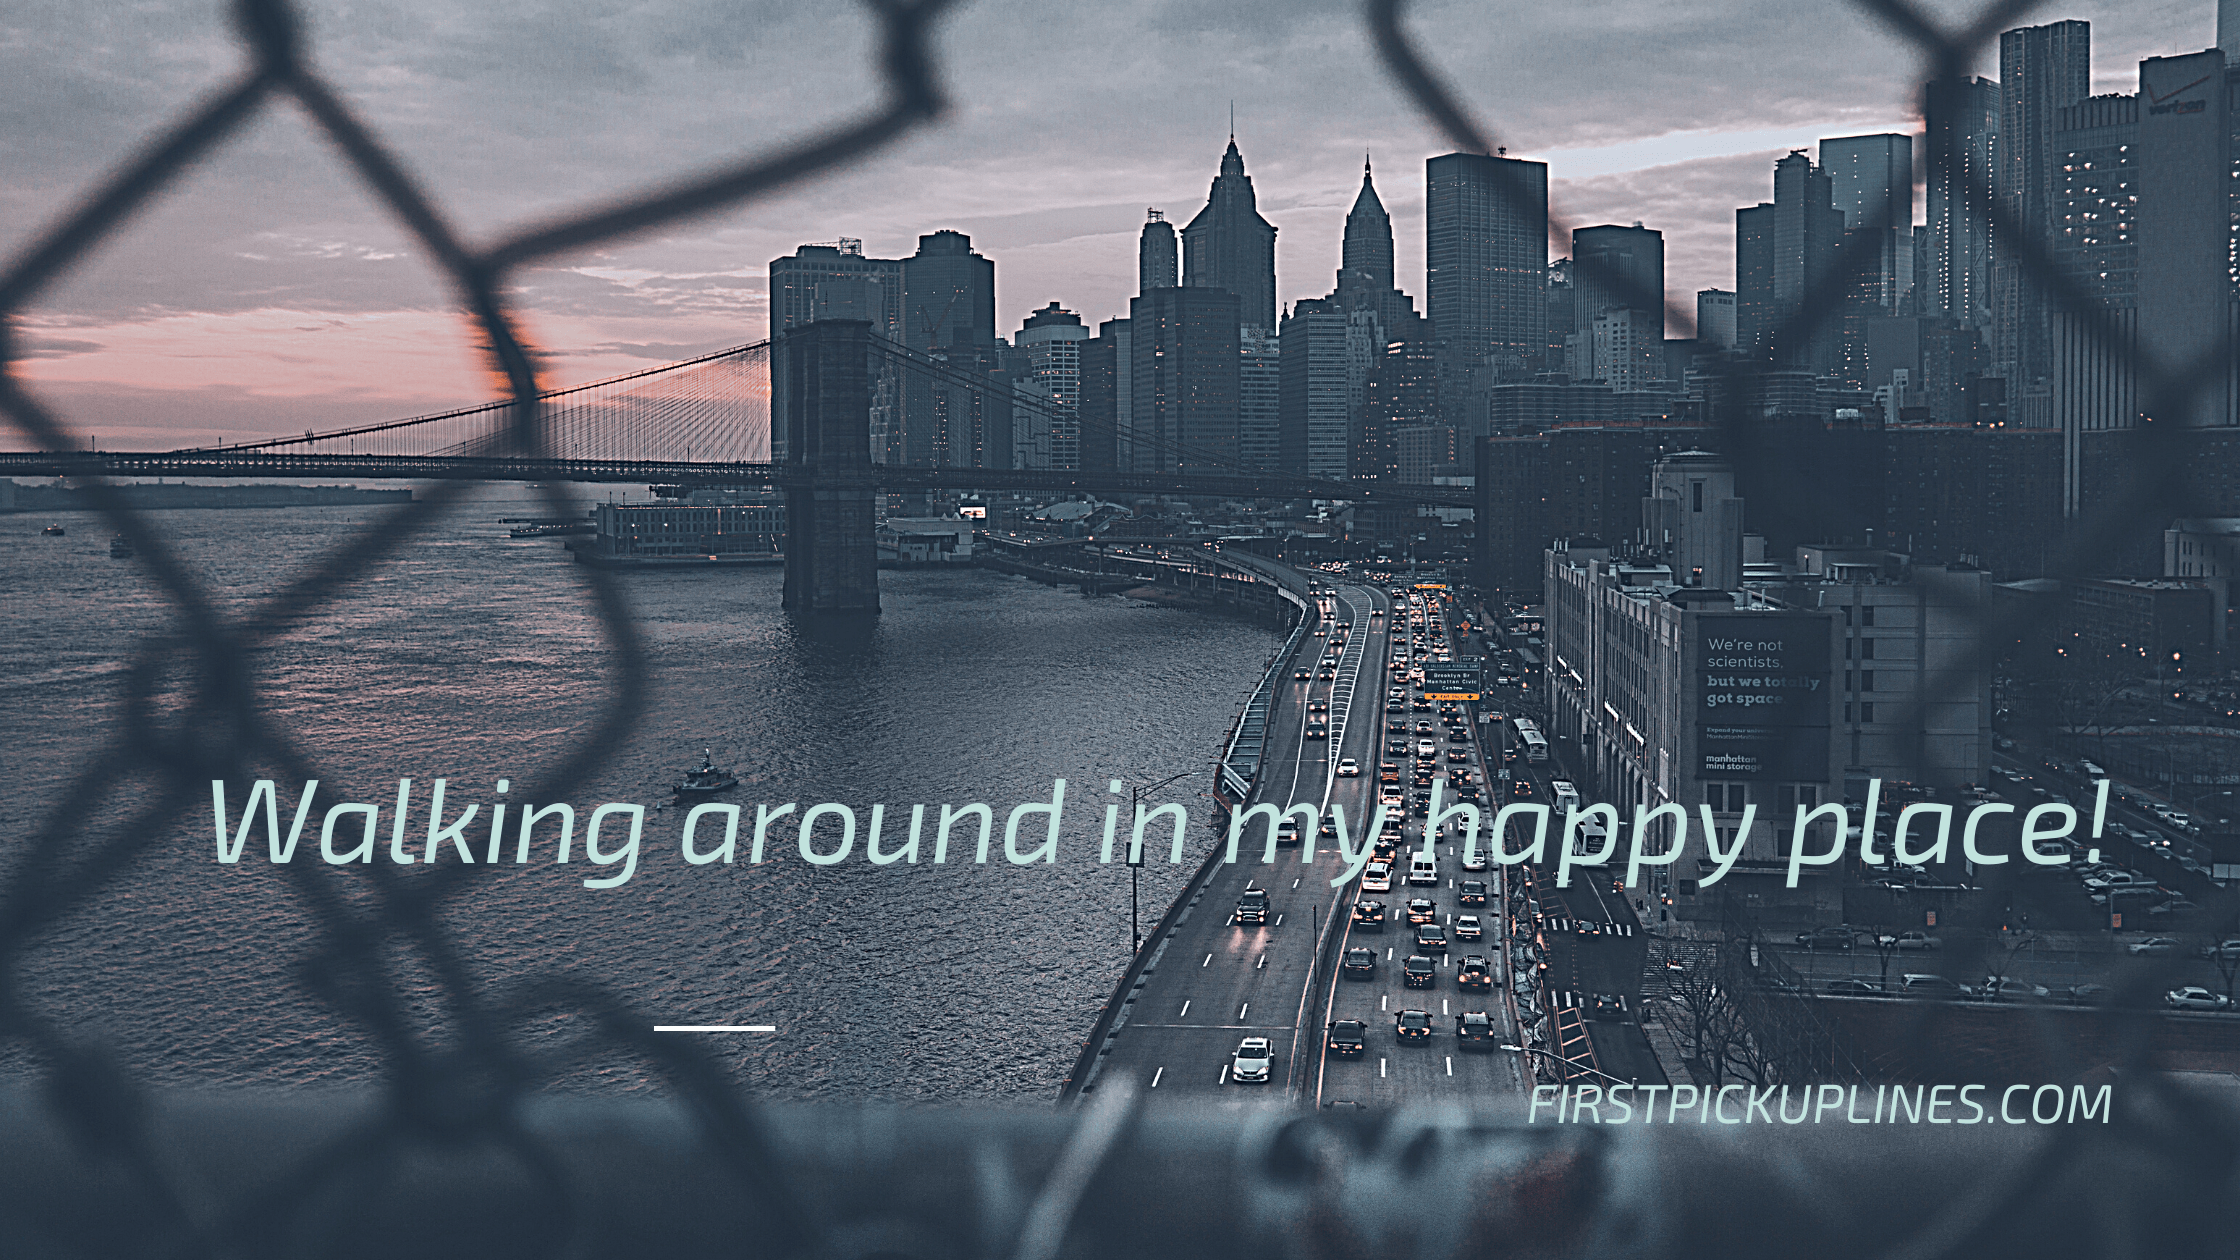 Inspiring Brooklyn Bridge Quotes  - Inspiring Brooklyn Bridge Quotes  - 95 Brooklyn Instagram Captions for Bridge Pictures in 2022